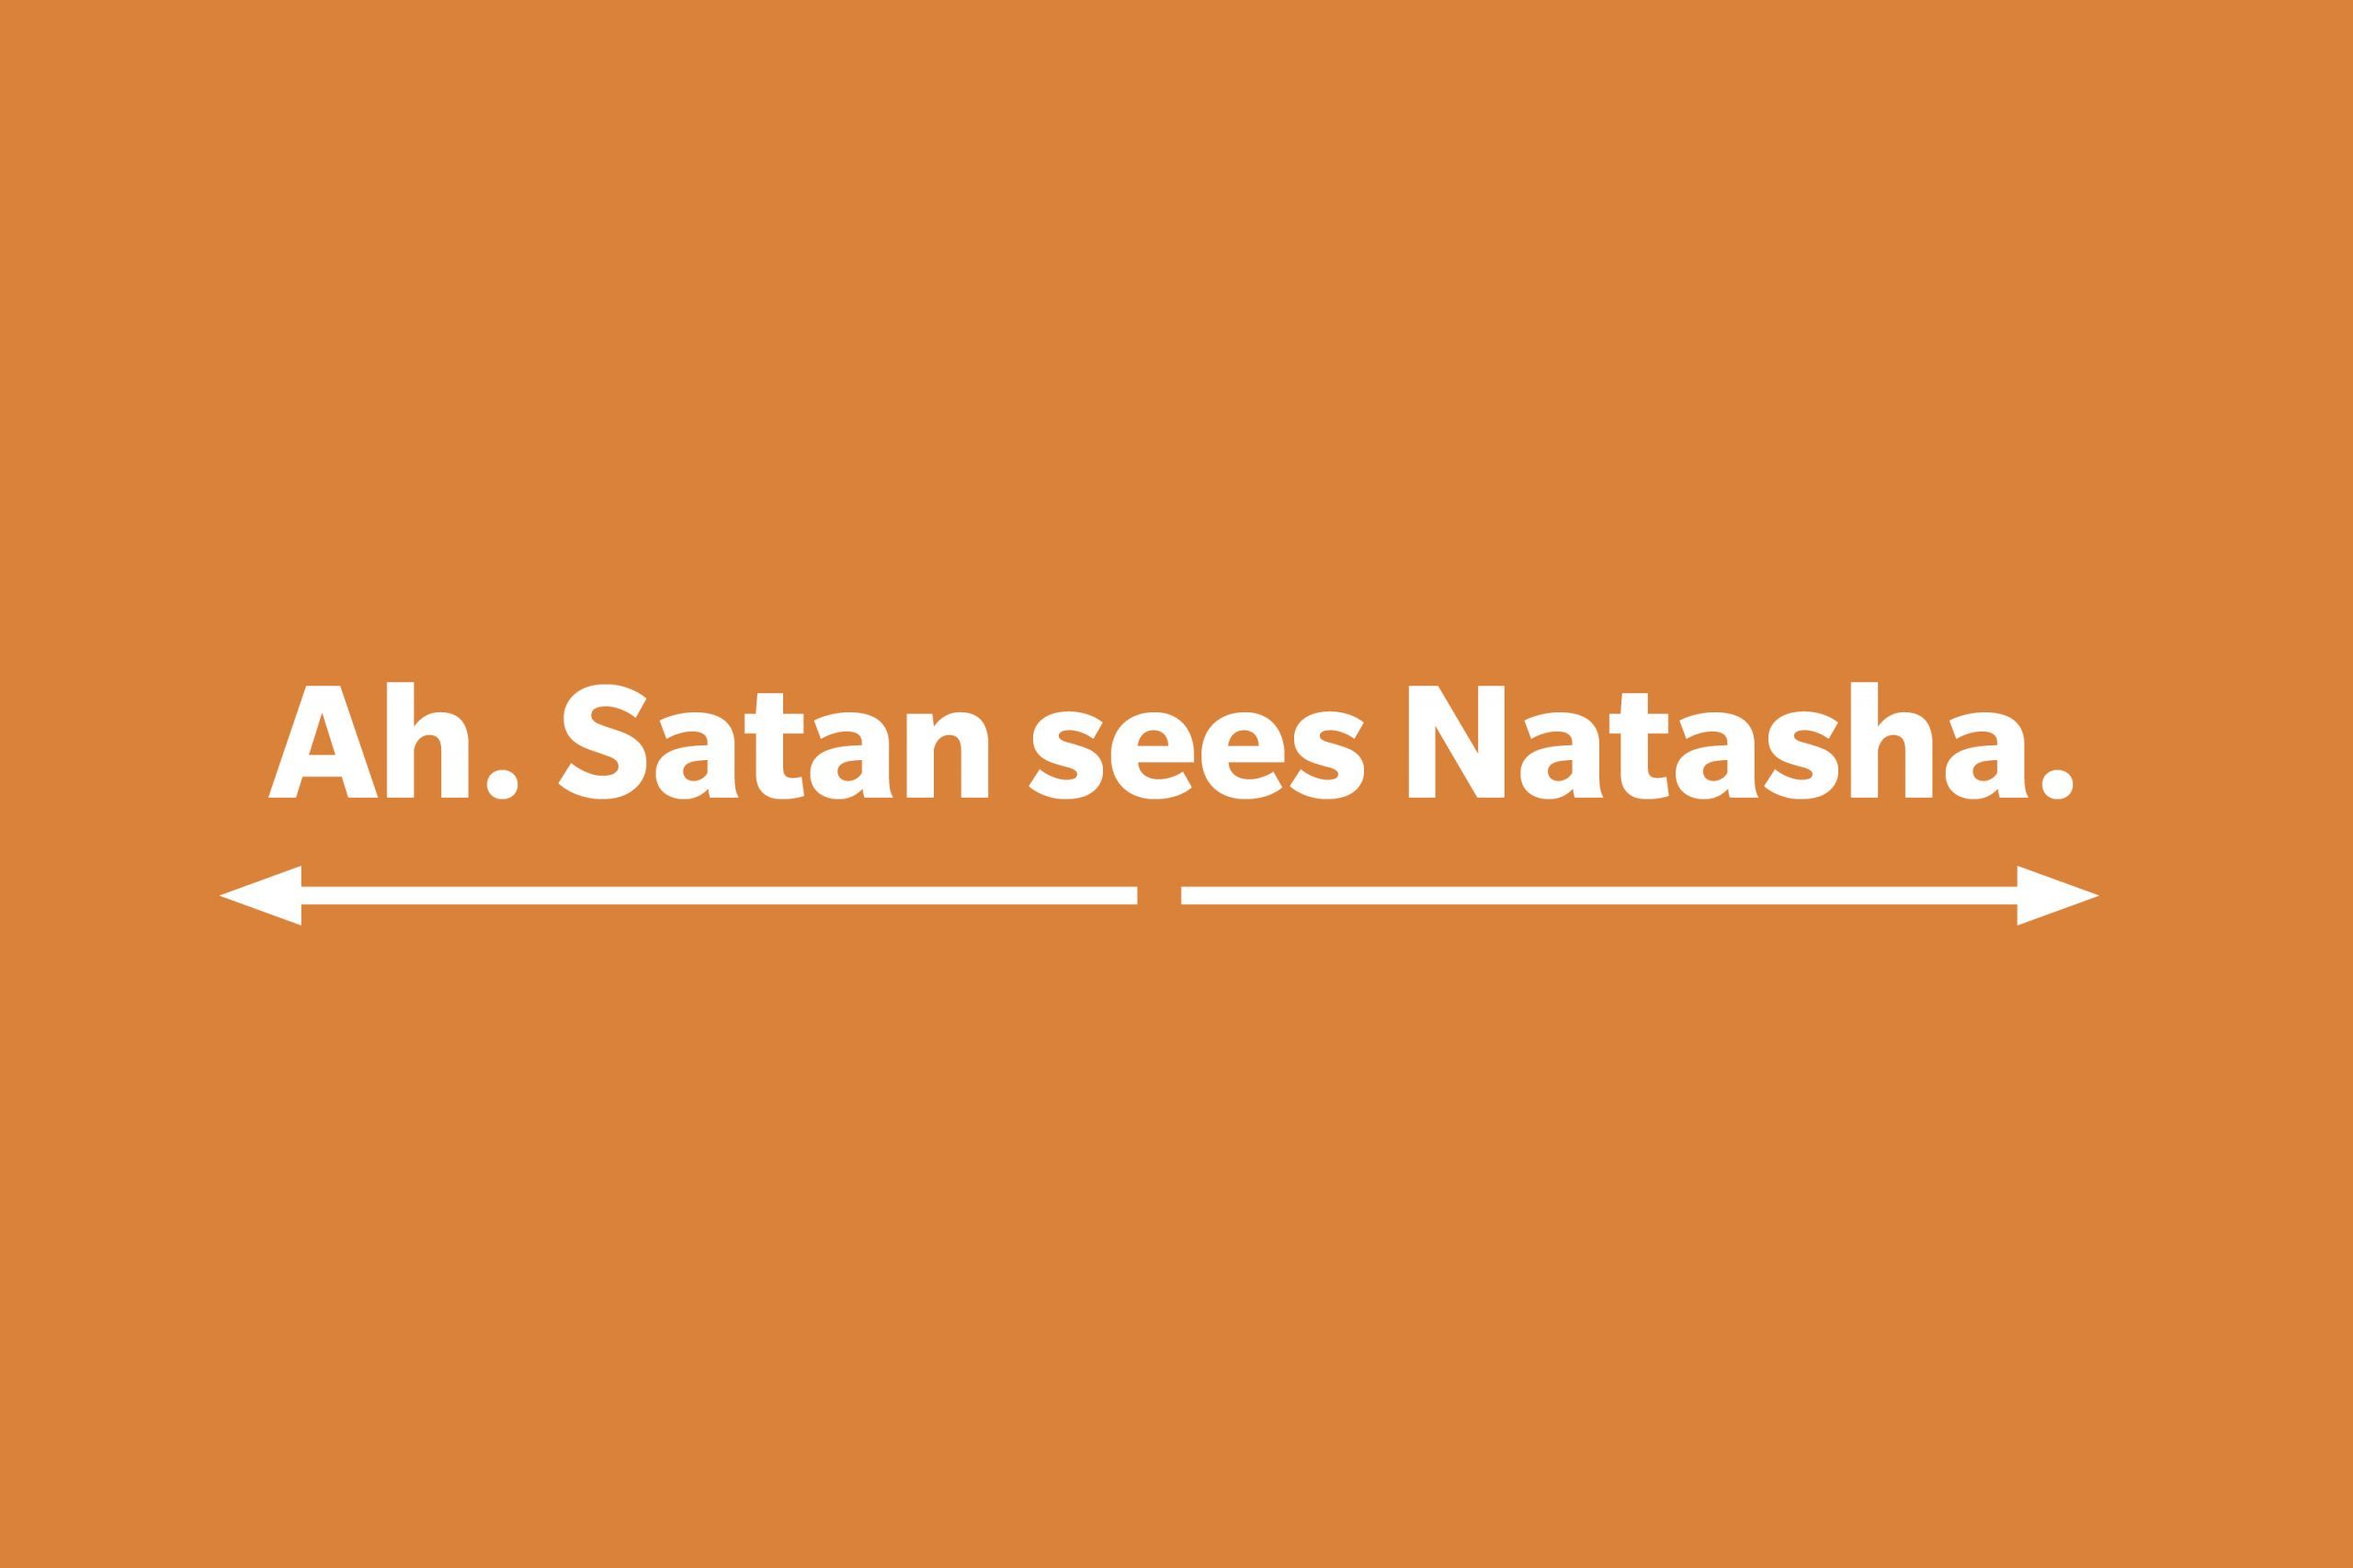 Ah. Satan sees Natasha.